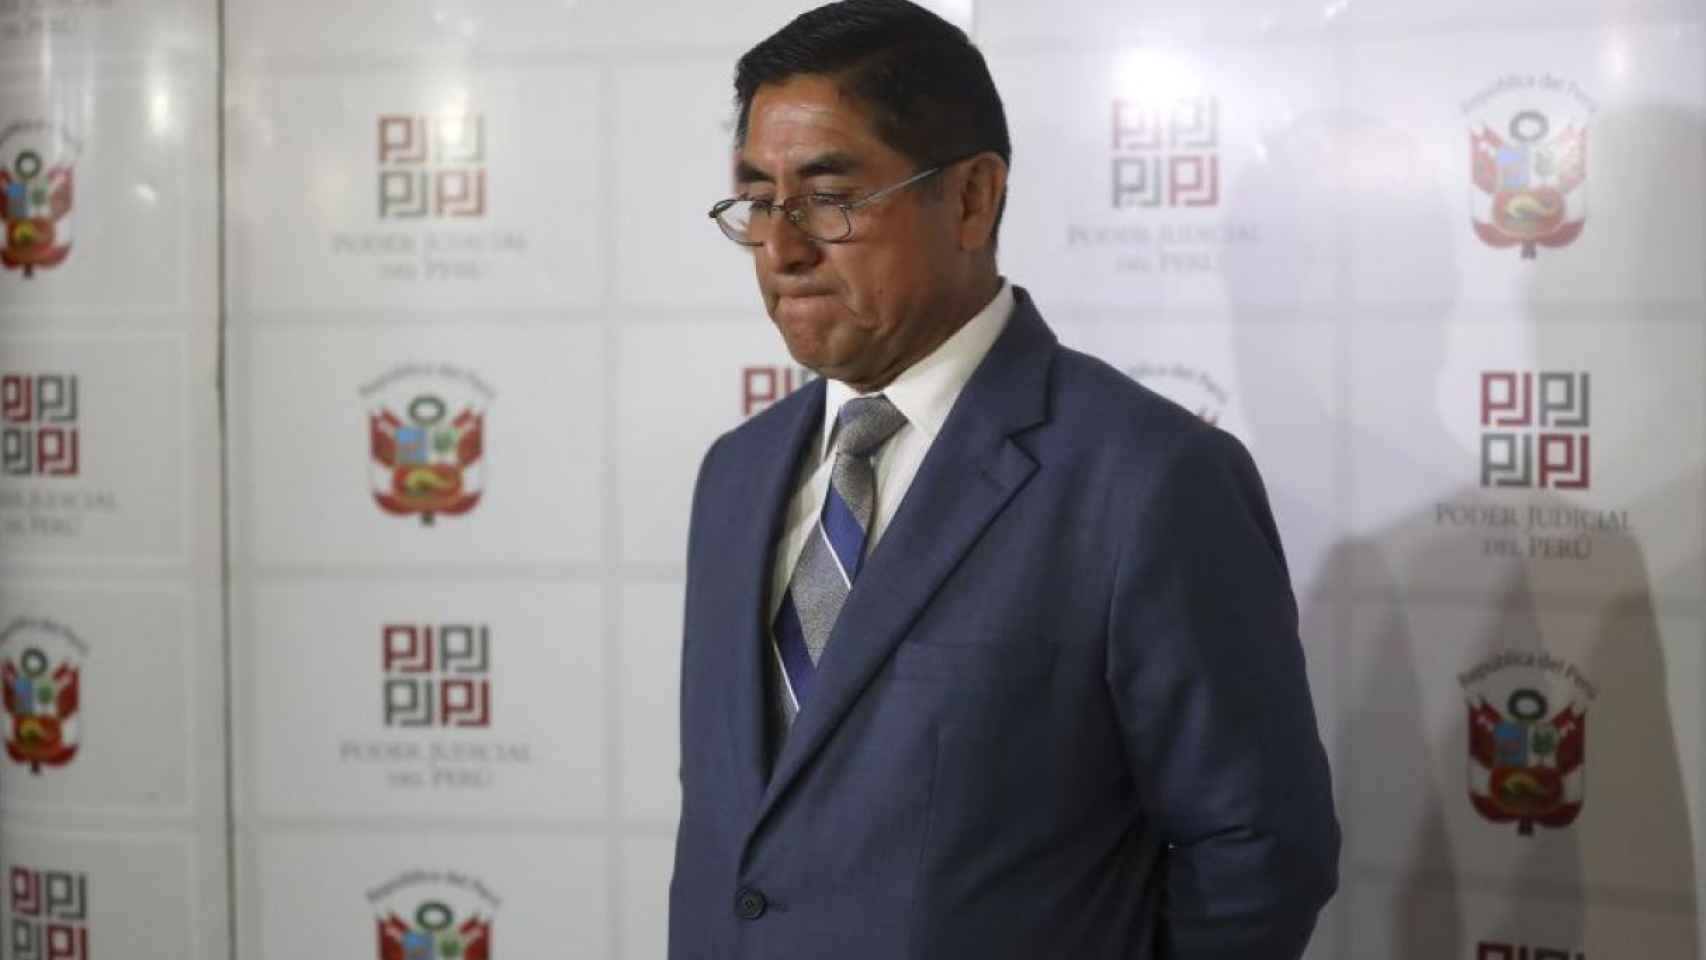 El juez Supremo de Perú, César Hinostroza.